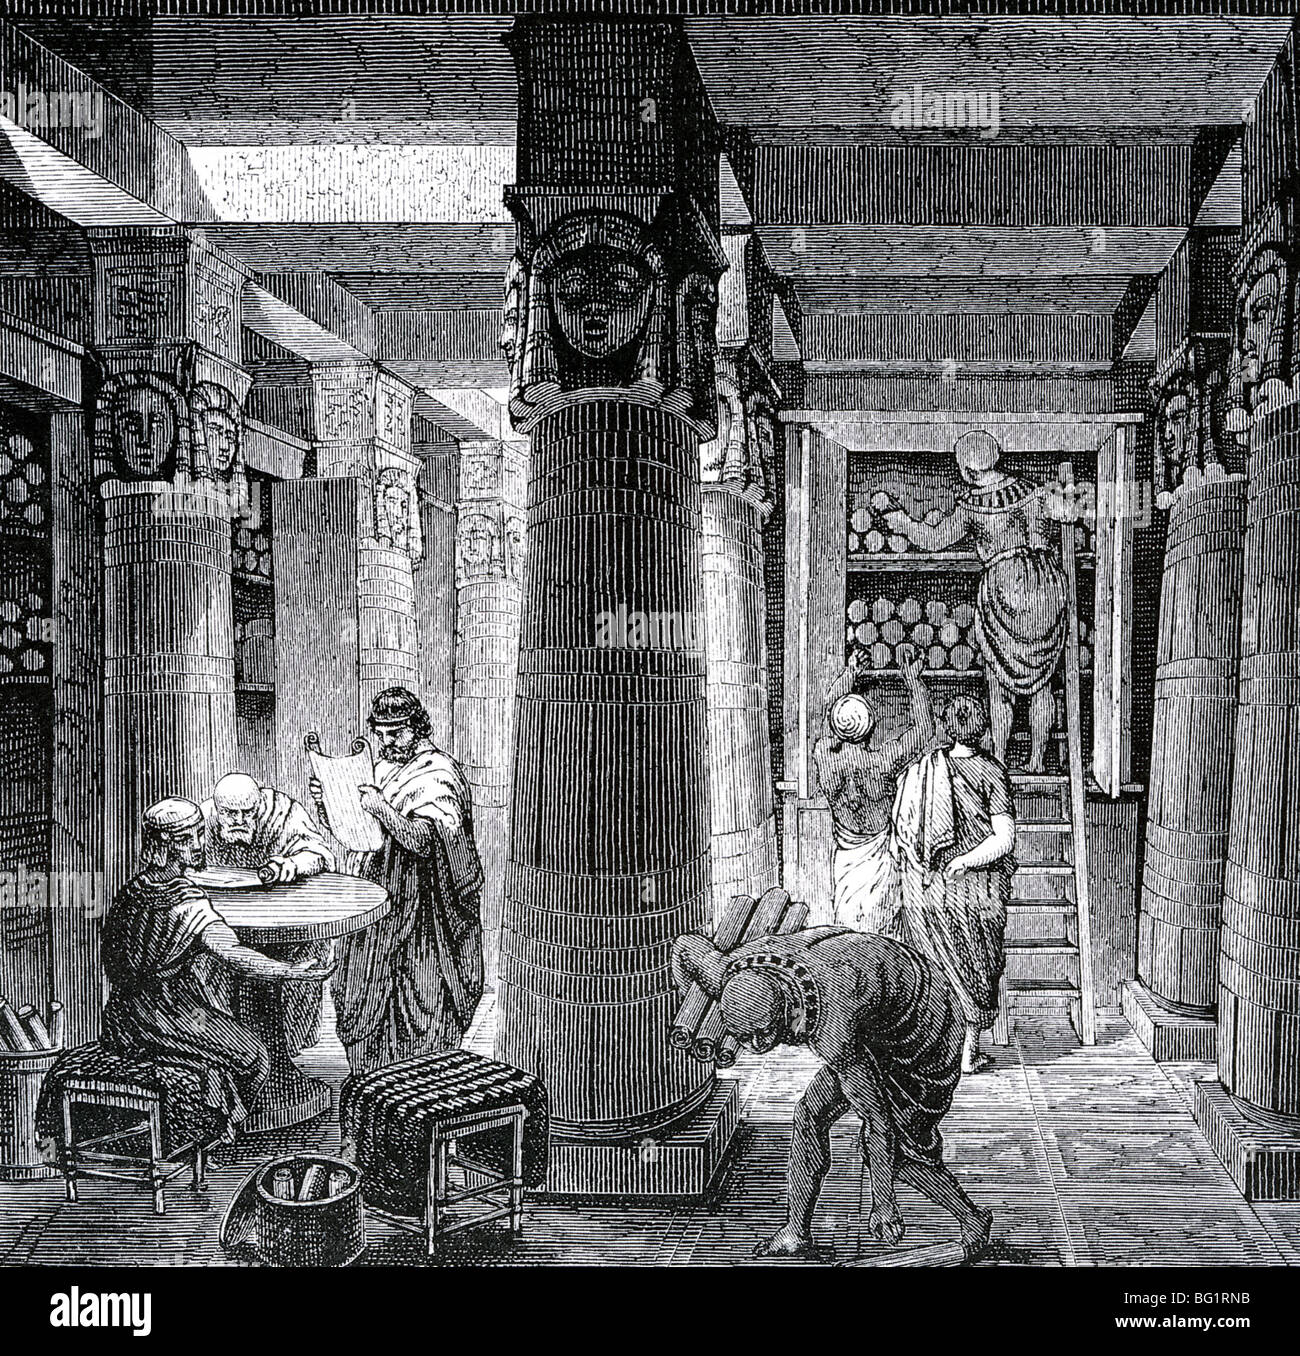 Bibliothek in ALEXANDRIA wie in einem 19. Jahrhundert Gravur vorgestellt Stockfoto